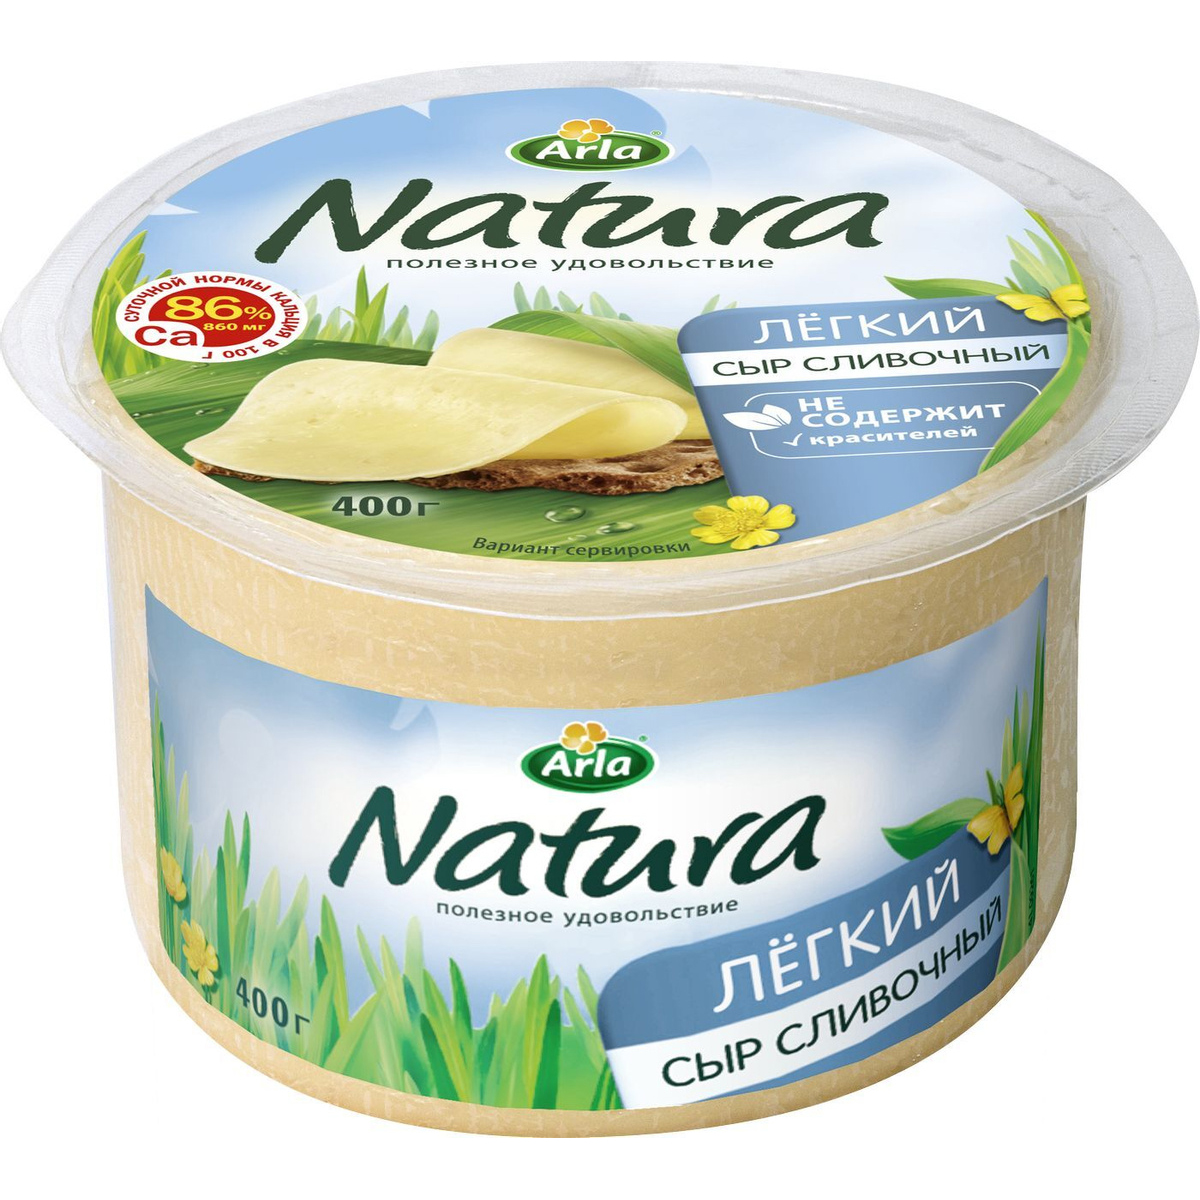 Легкий сливочный сыр. Сыр Natura Arla легкий 16% 400 г.. Arla Natura сыр легкий. Сыр Arla Natura 45% 400г Россия. Сыр сливочный легкий 16% Arla Natura.